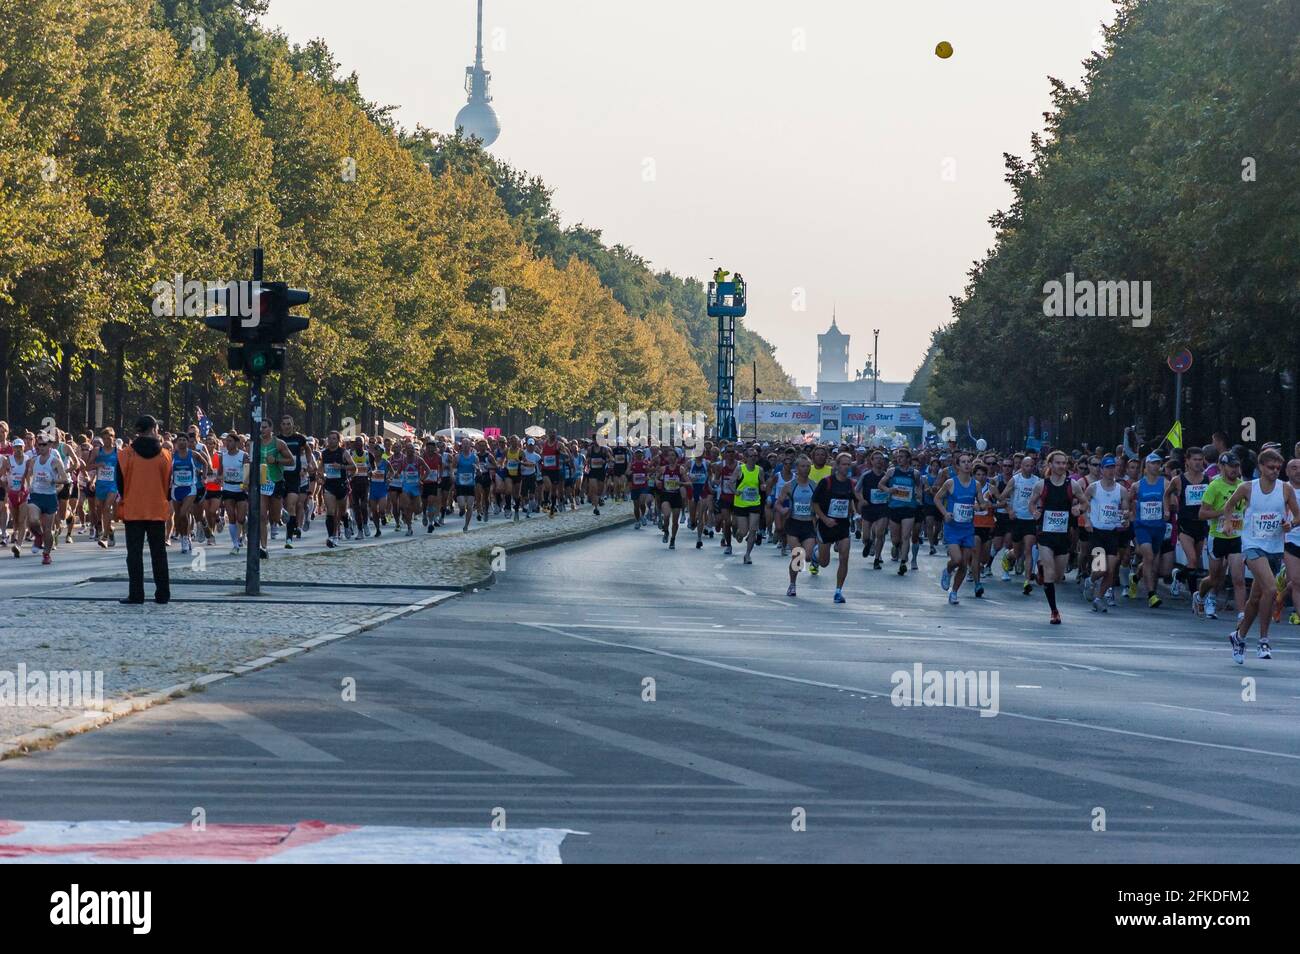 Runners at the thirtysixth Berlin Marathon, Germany Stock Photo Alamy